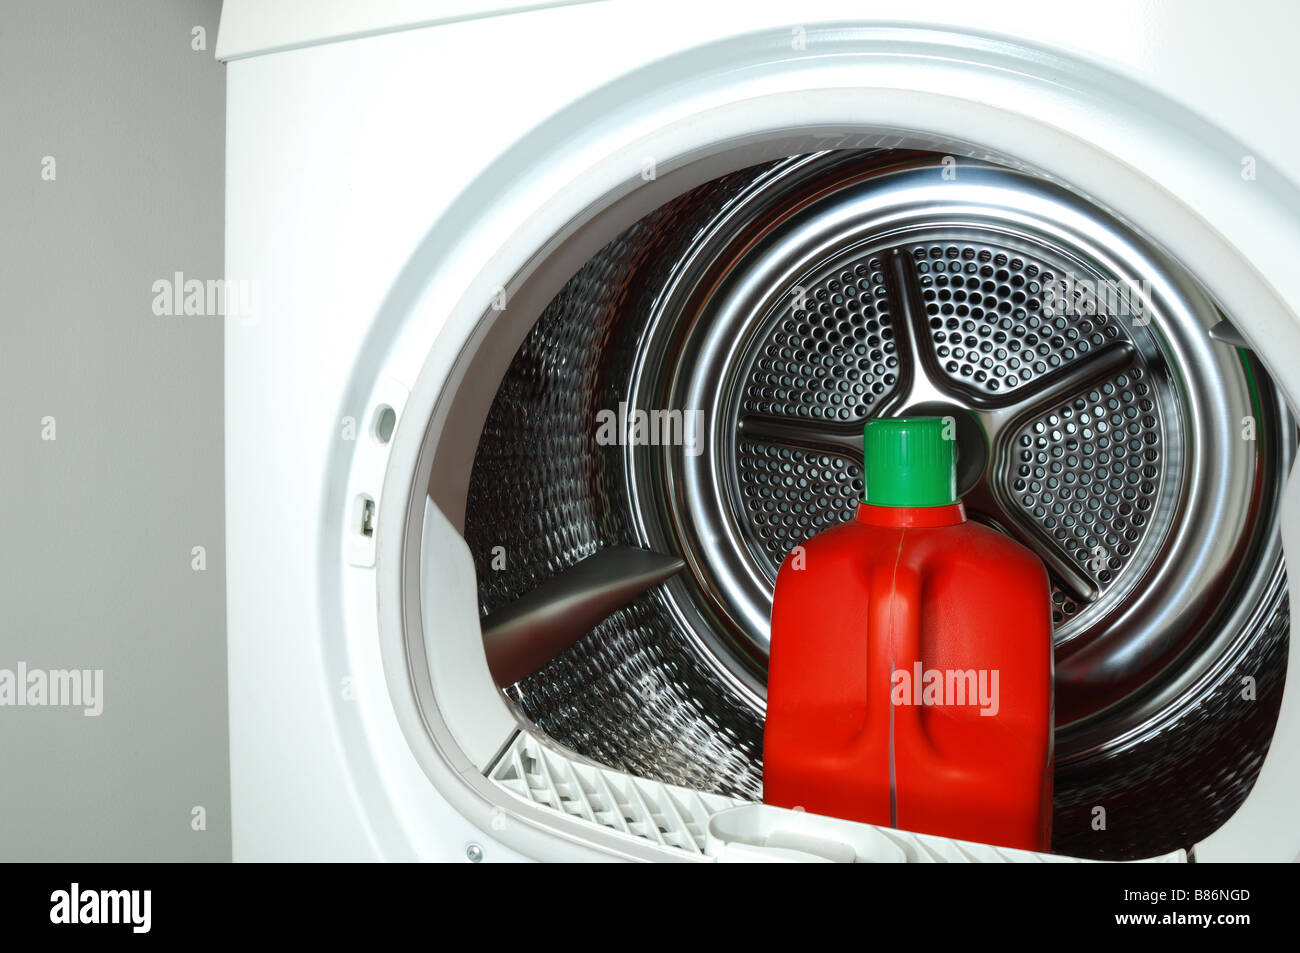 Ein Behälter mit Waschmittel im Inneren einer Waschmaschine Wäschetrockner  Stockfotografie - Alamy